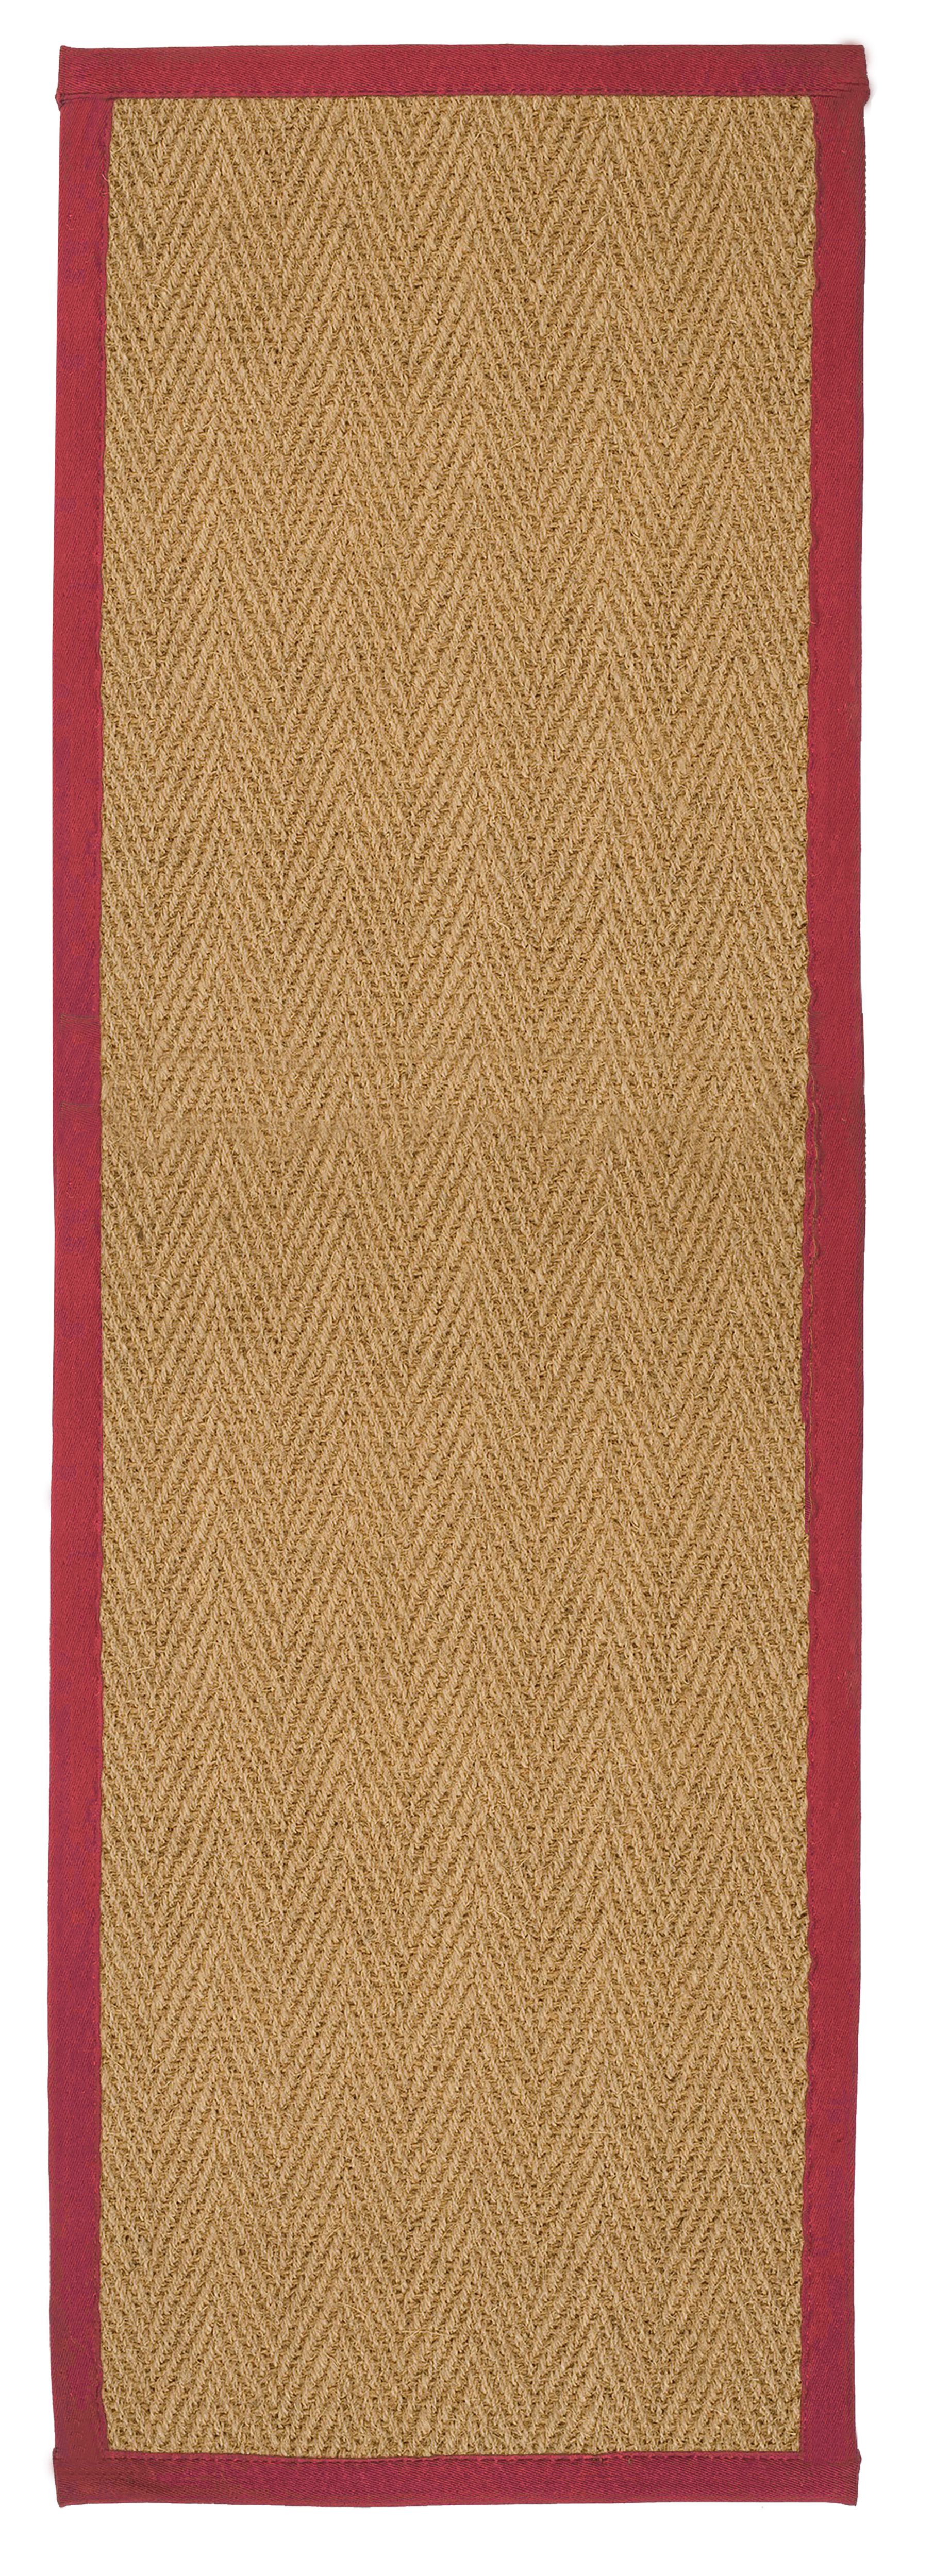 Herringbone weave Brown, red Rug 180cmx60cm